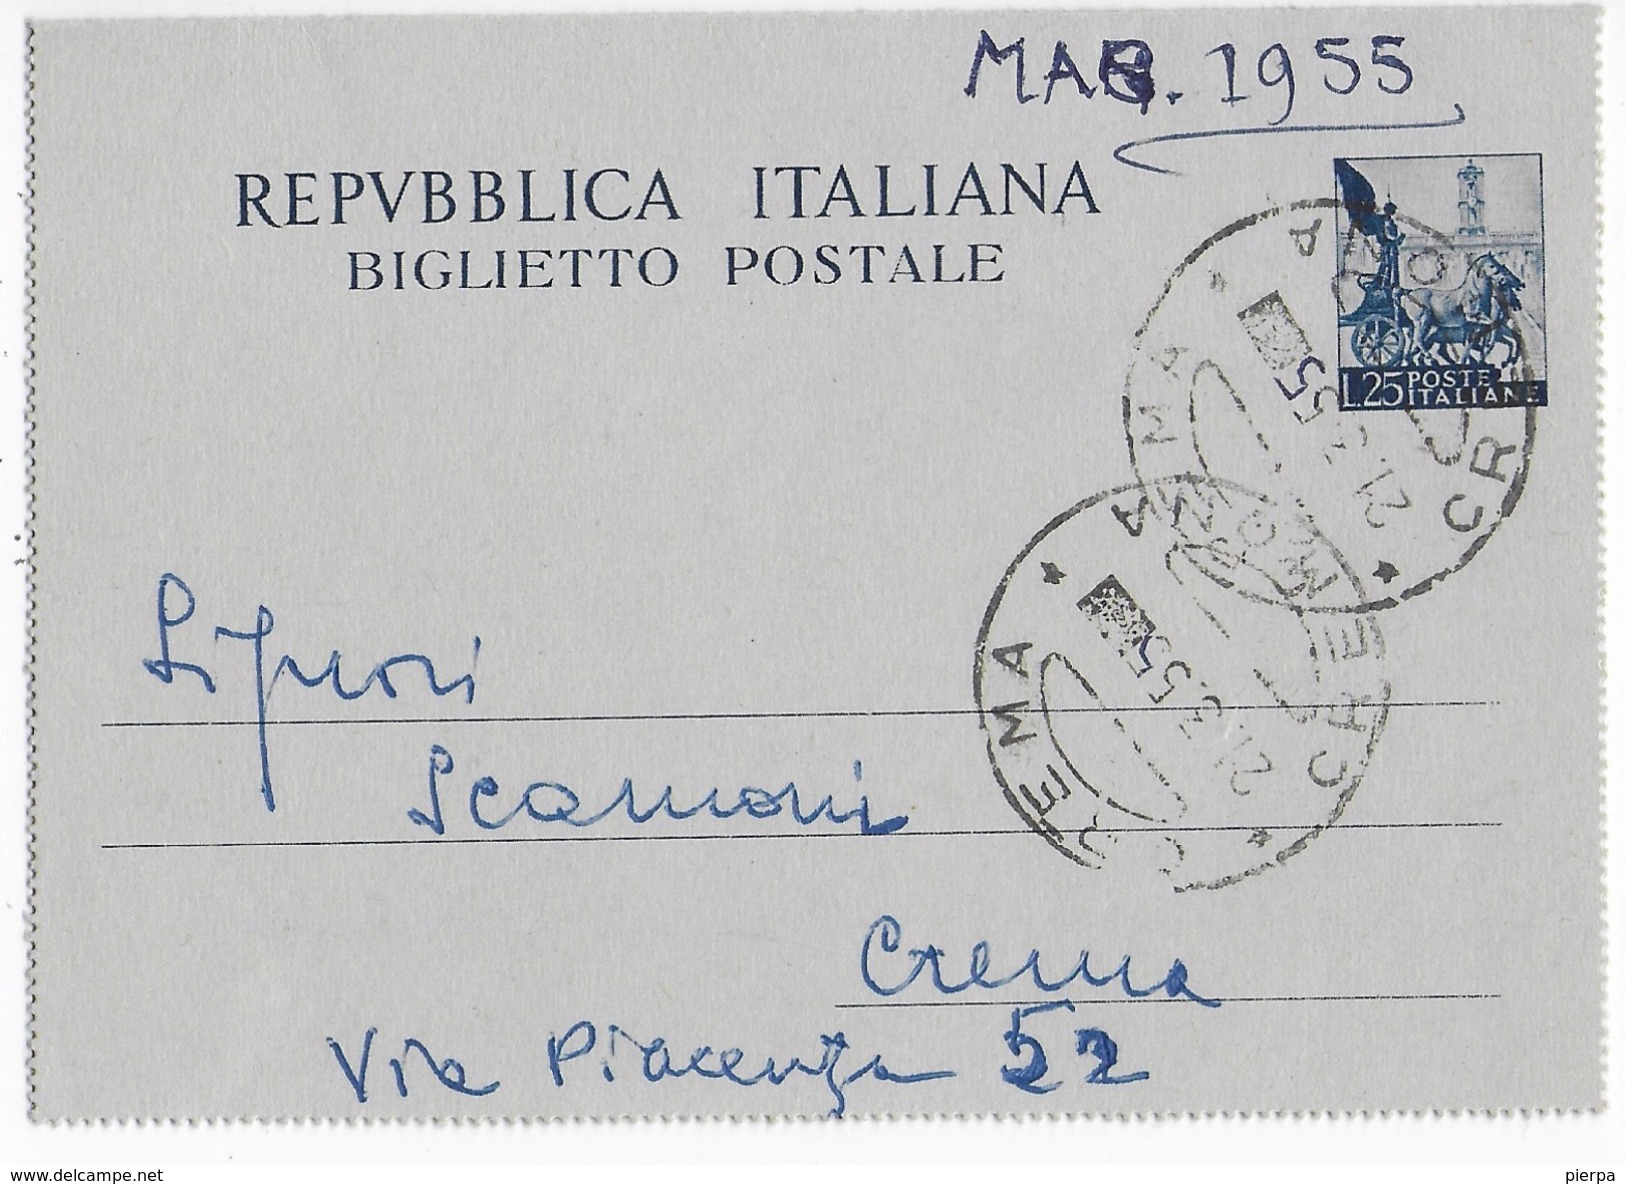 STORIA POSTALE REPUBBLICA - BIGLIETTO POSTALE QUADRIGA LIRE 25 DA CREMA 1955 - Entero Postal